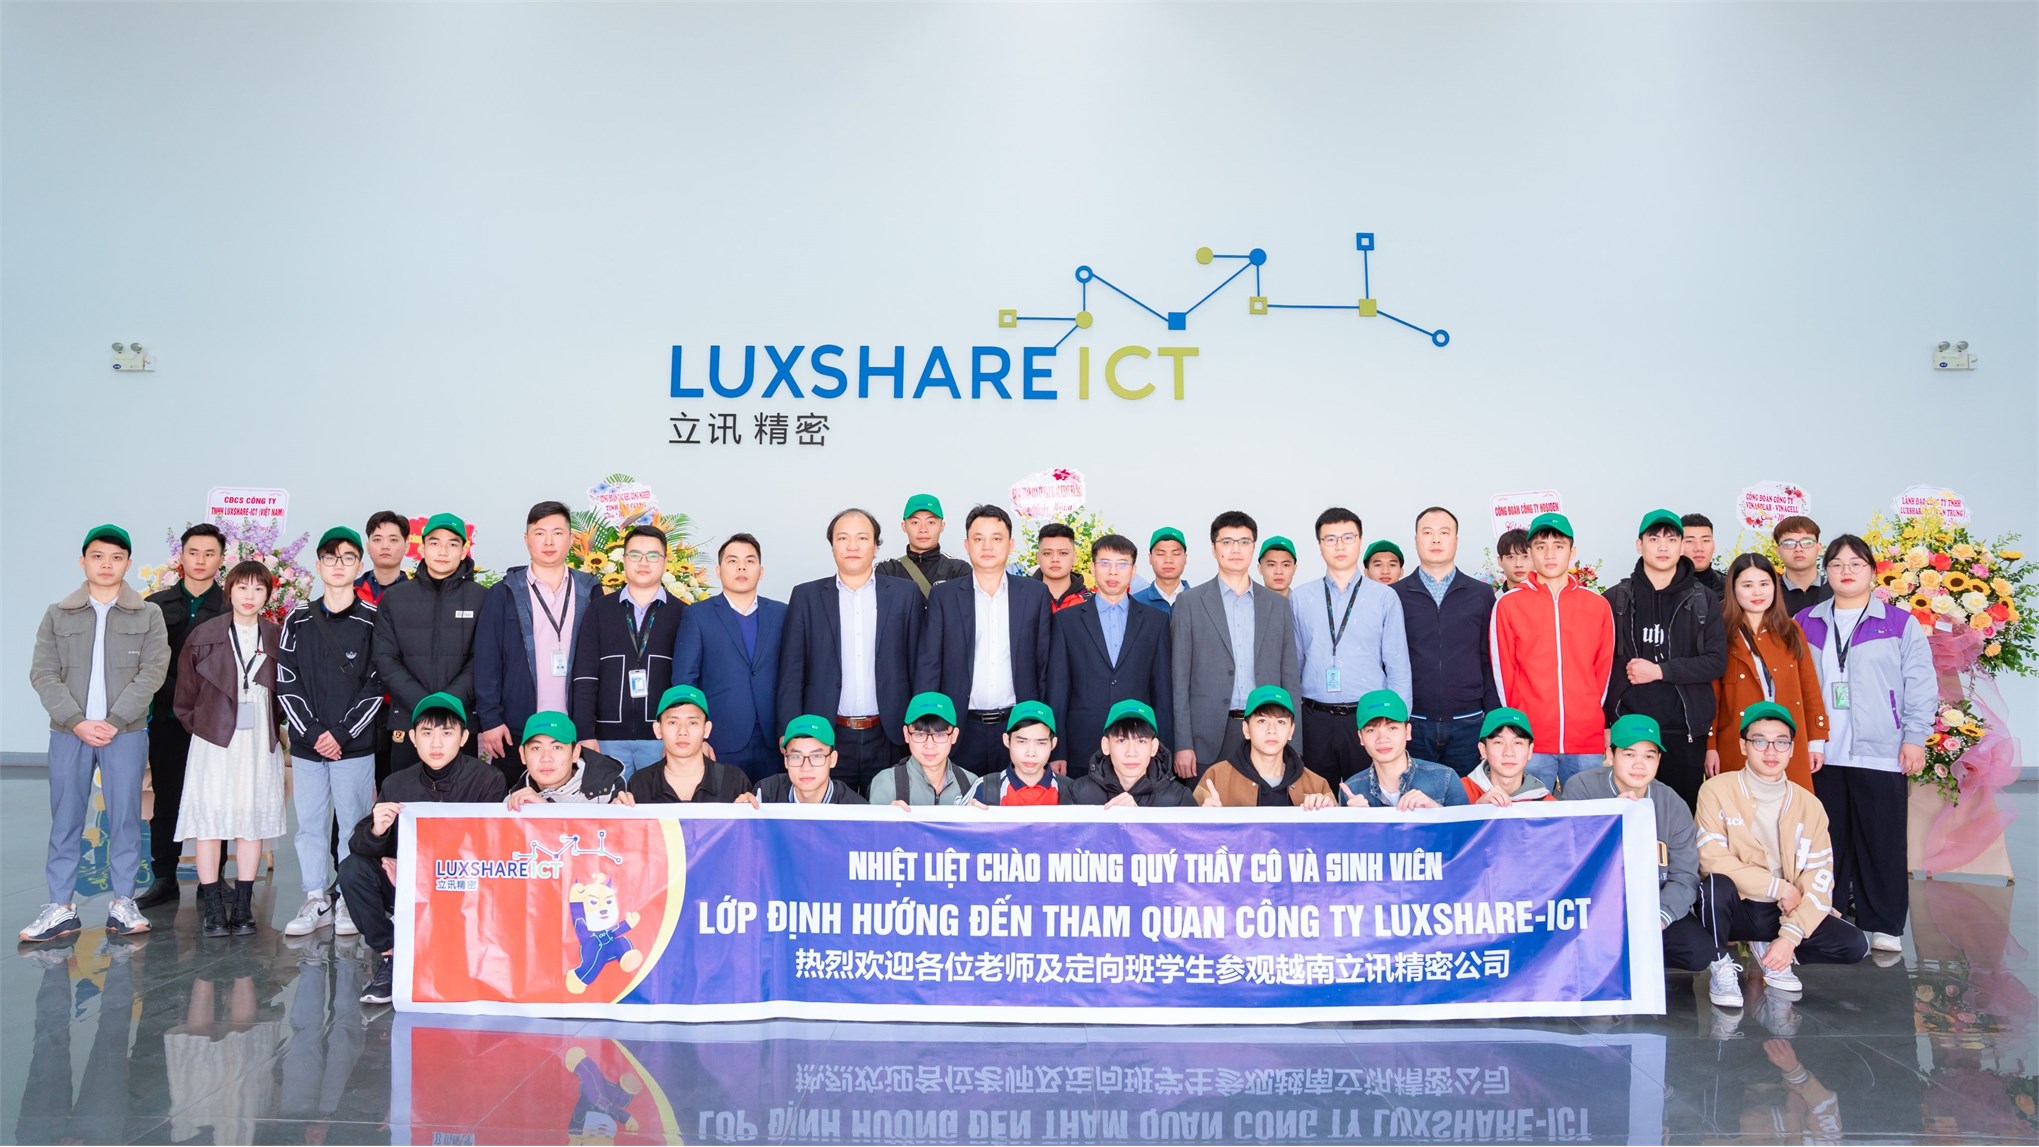 Khai giảng Lớp đào tạo định hướng Luxshare-ICT: Cảm xúc và sự gắn kết